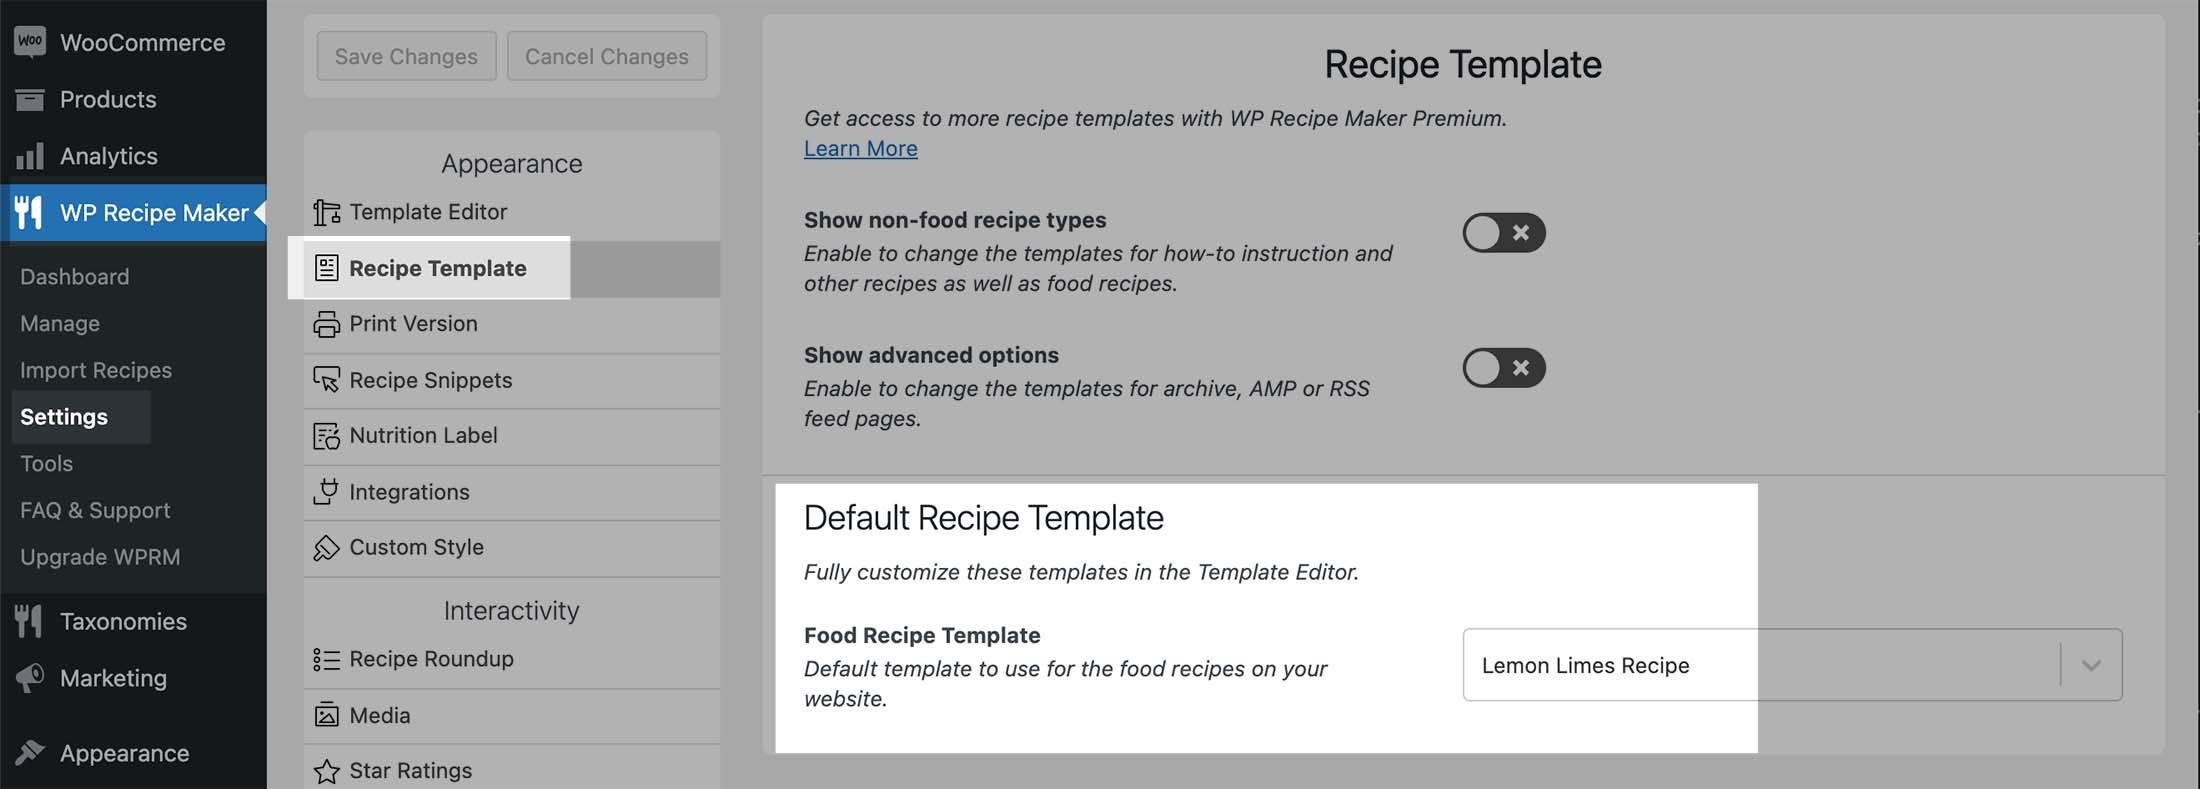 Default Recipe Template